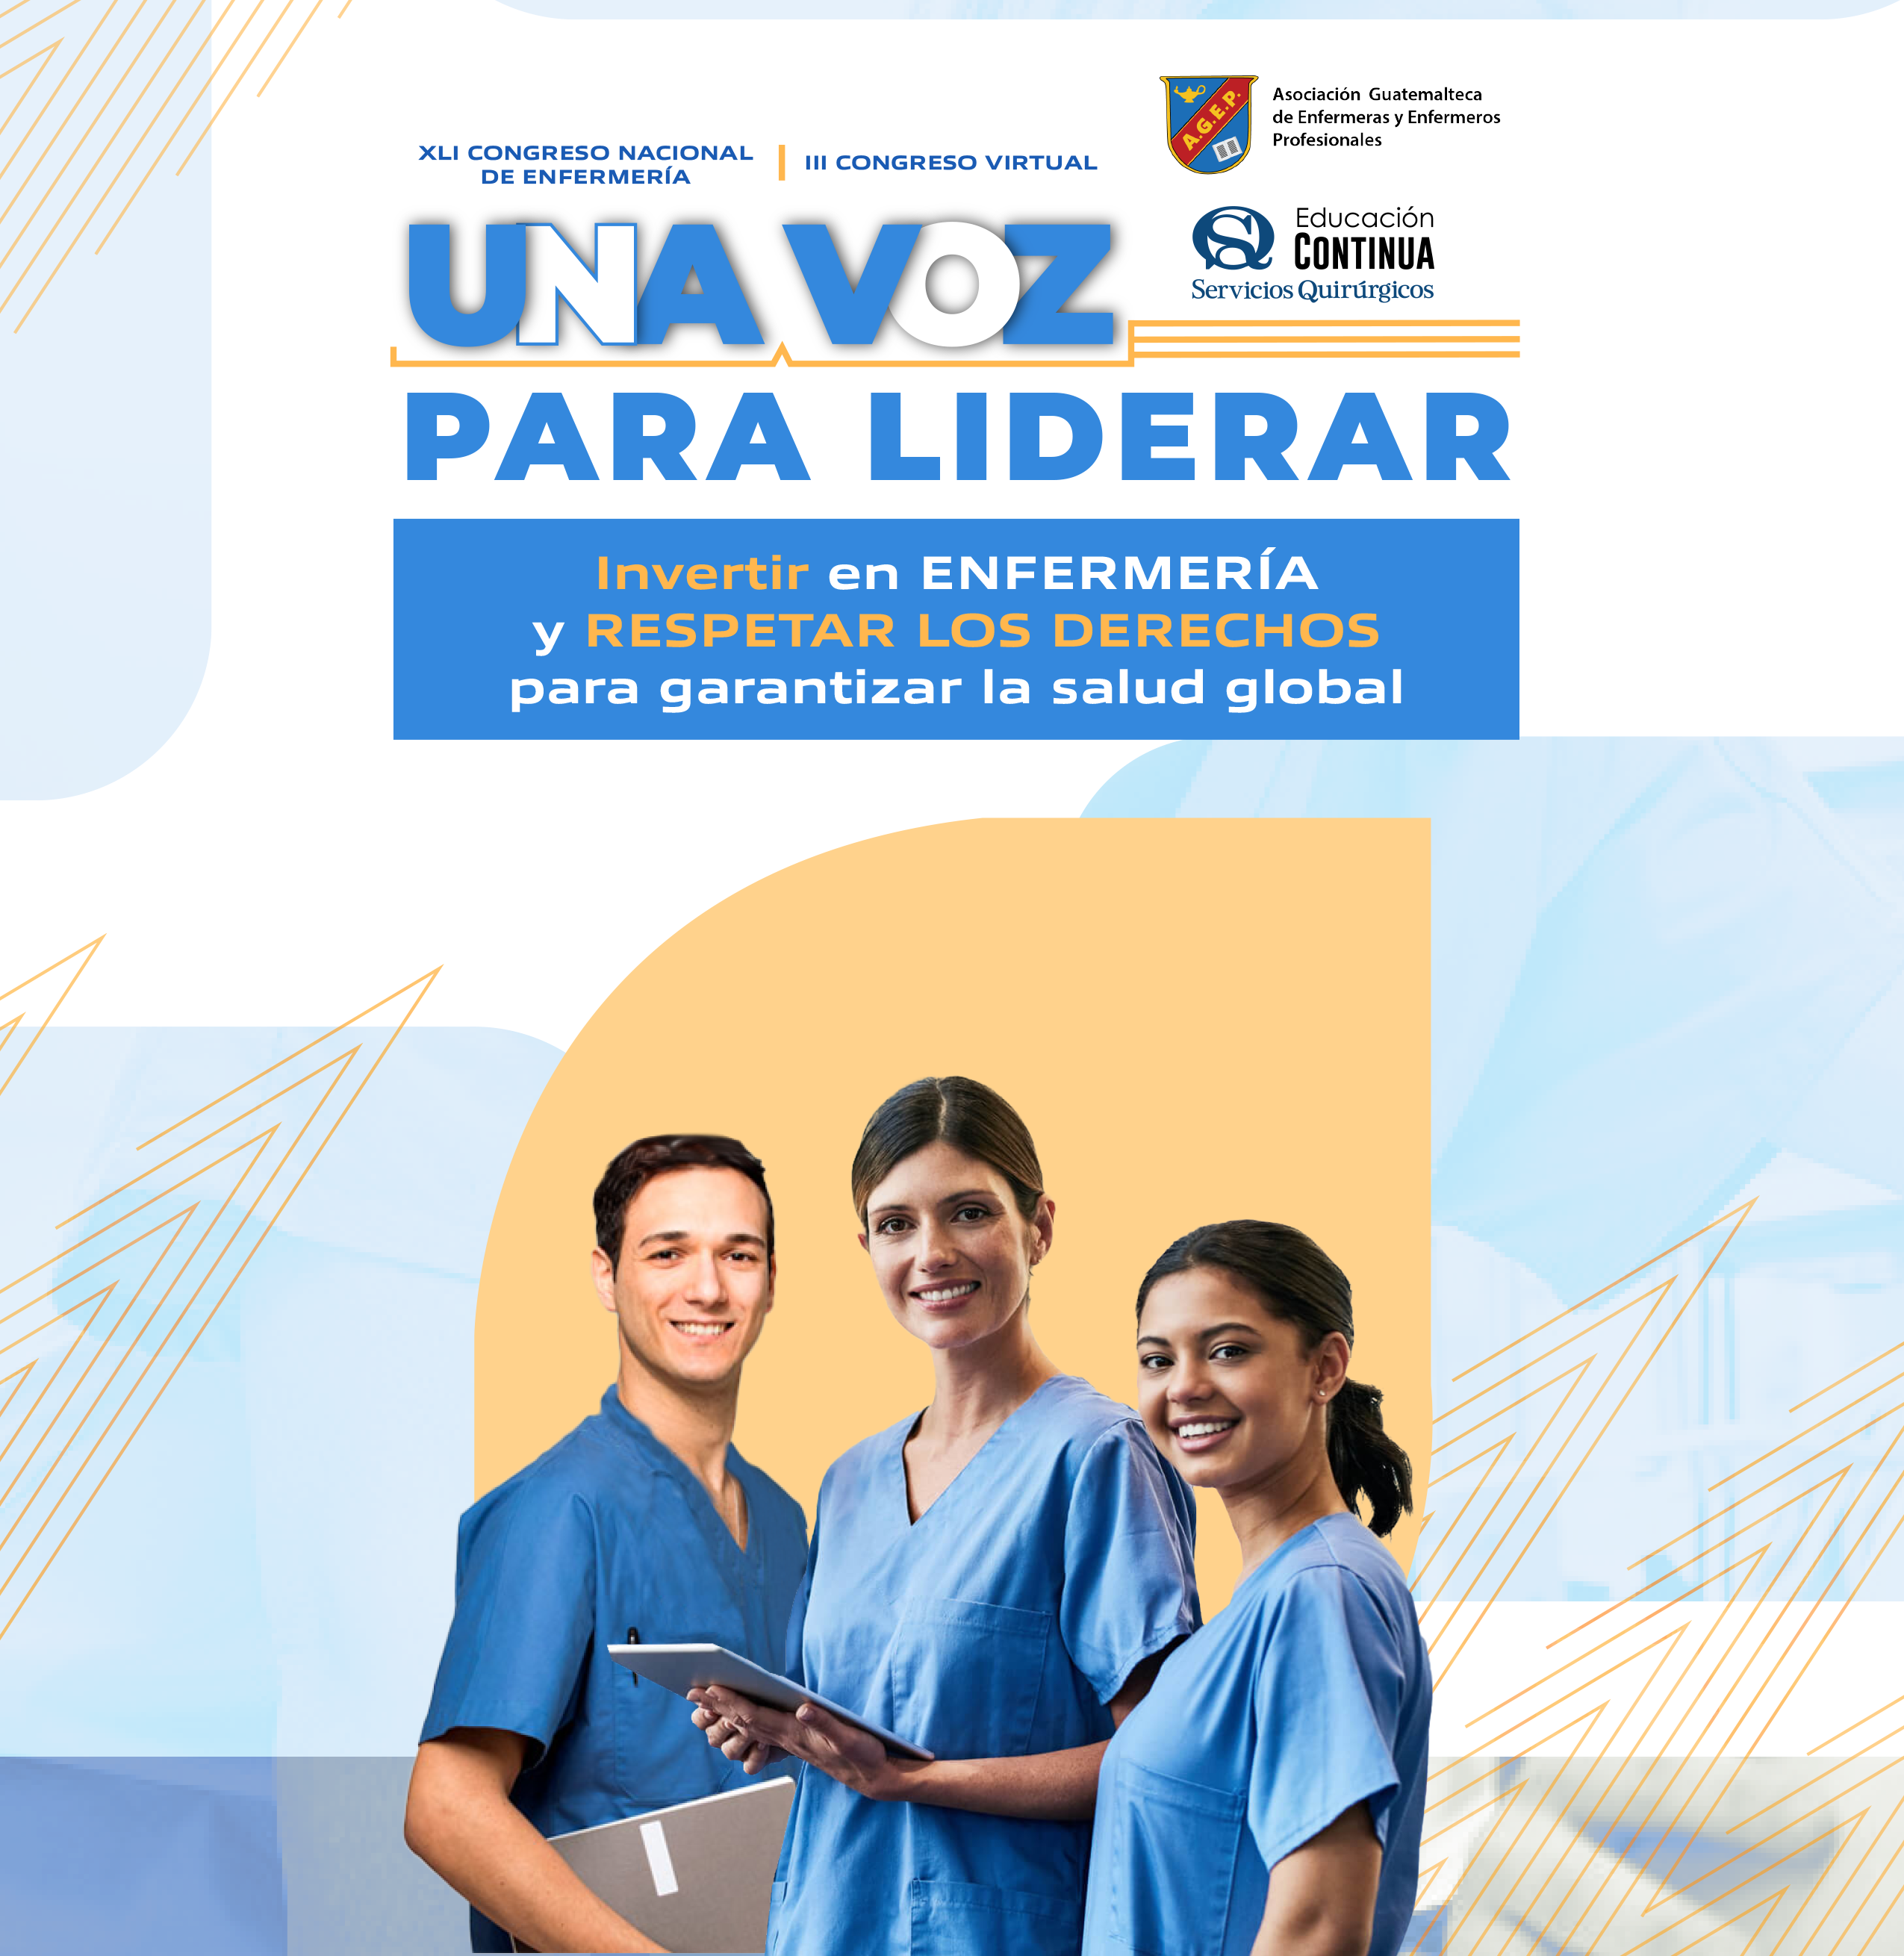 Asociación Guatemalteca de Enfermeras Profesionales Organizan el importante XLI Congreso Nacional de Enfermería y III Congreso Virtual de Enfermería